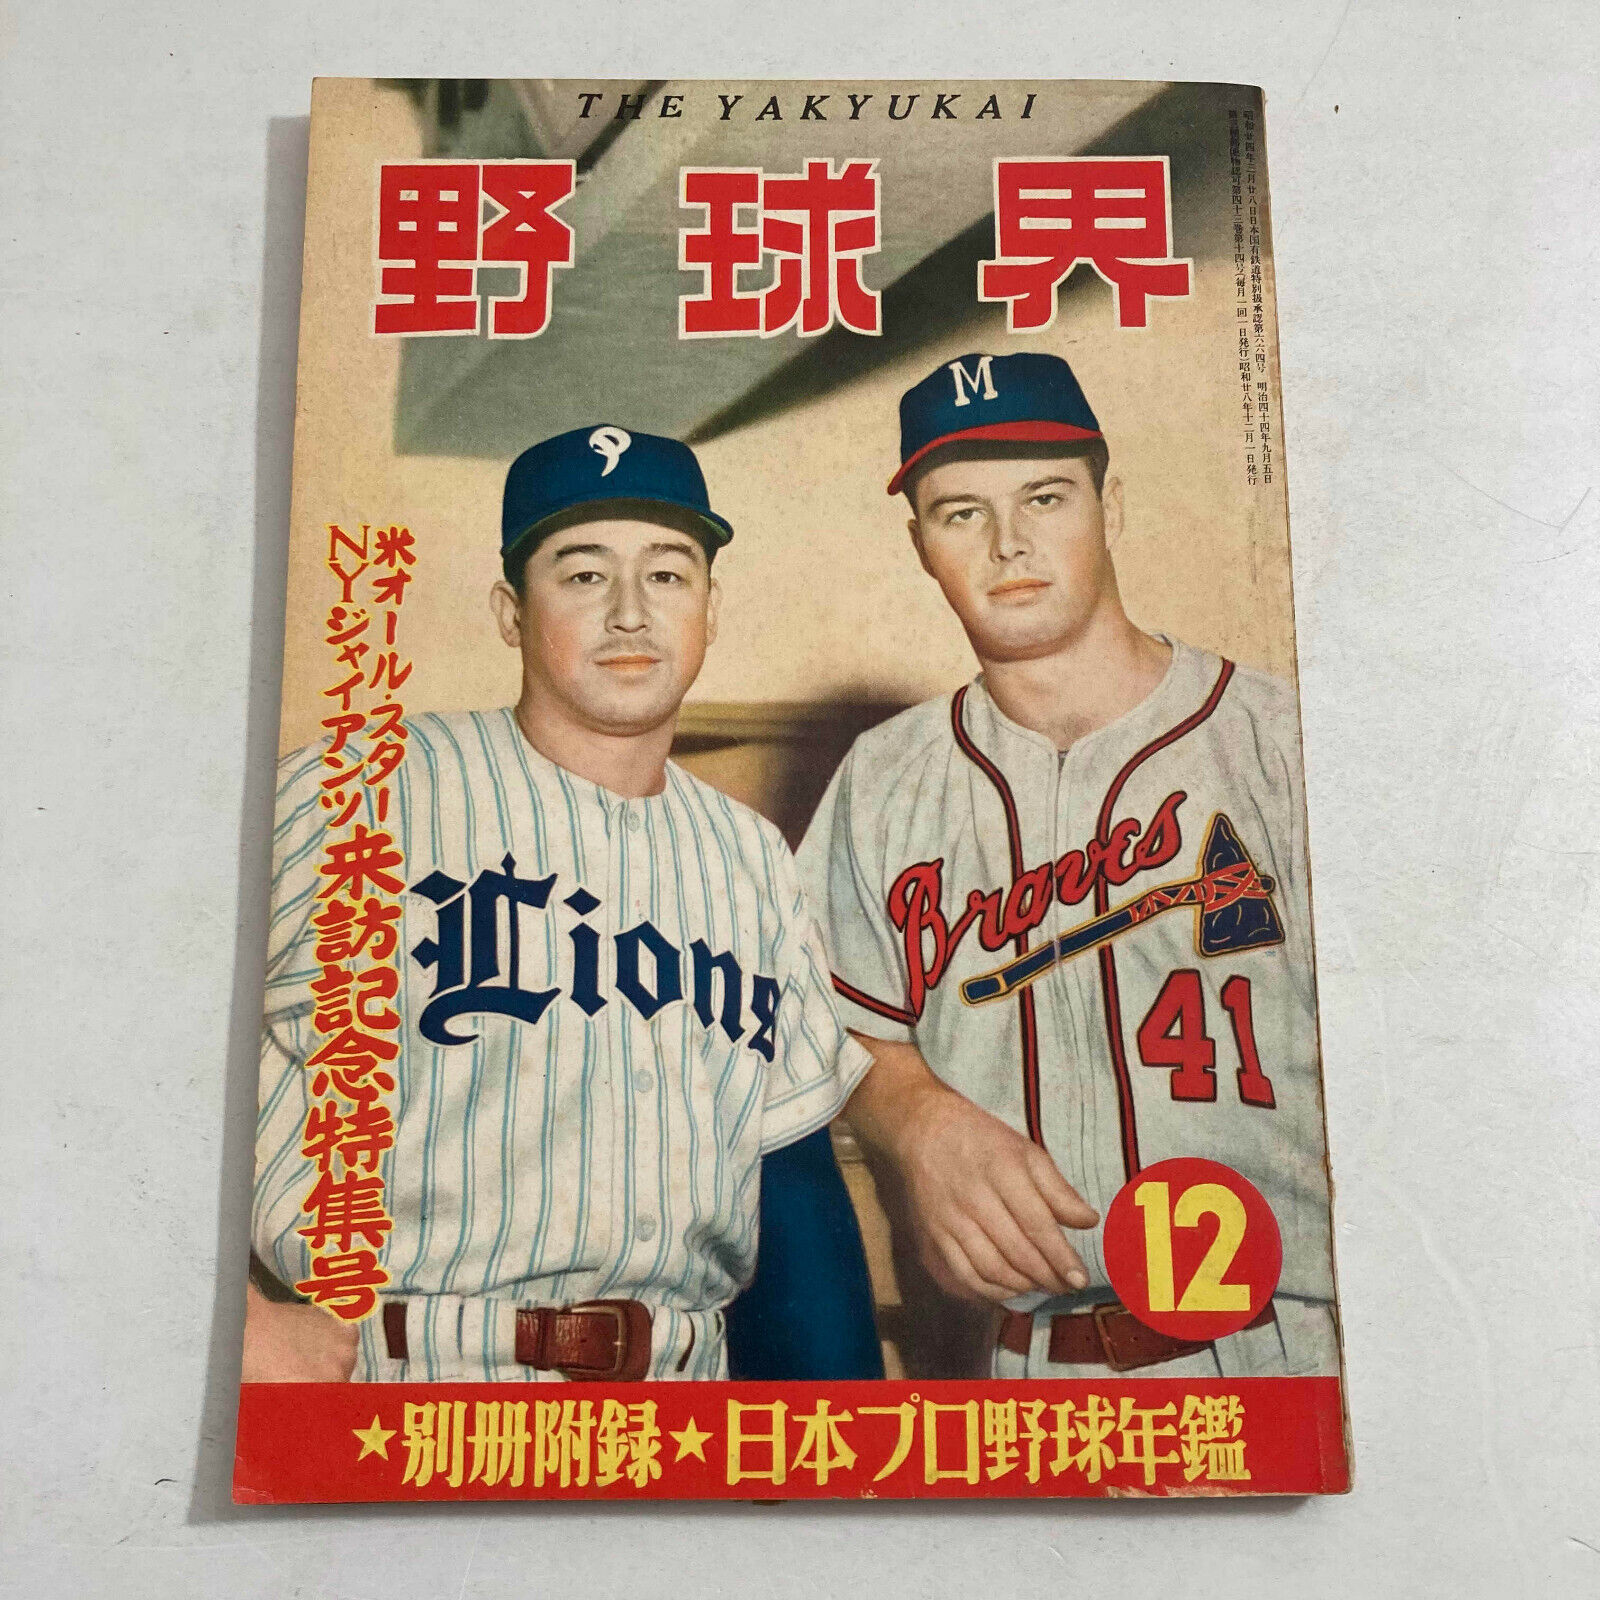 Gary Matthews Tetsuharu Kawakami Japanese Baseball Magazine 1953 The Yakyukai